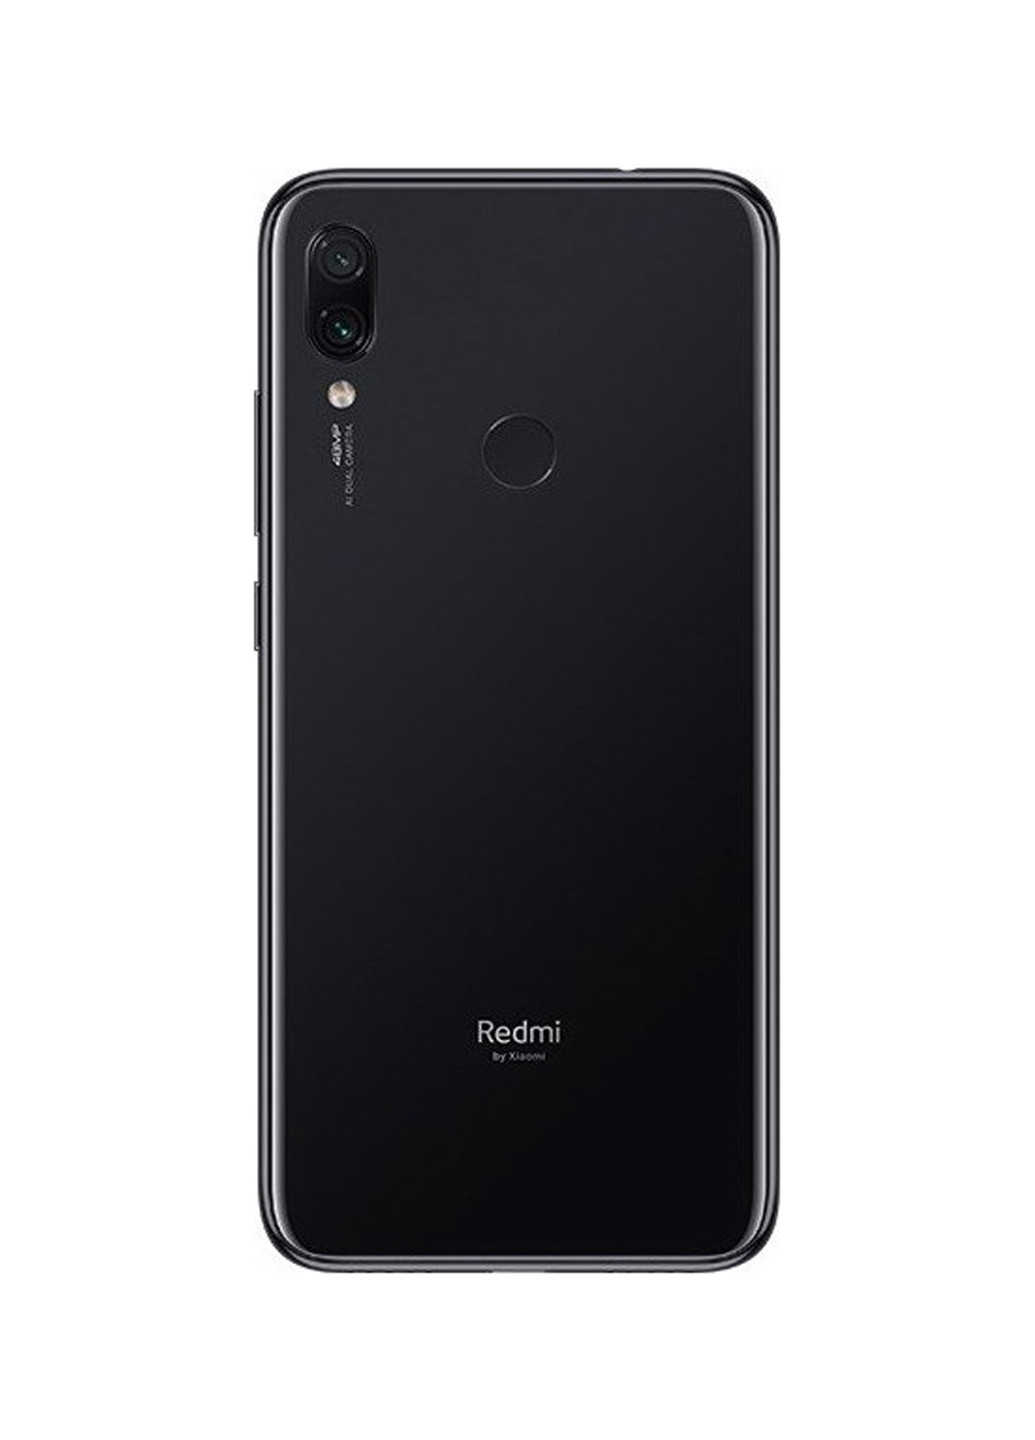 Смартфон Xiaomi redmi note 7 3/32gb space black (130569694)